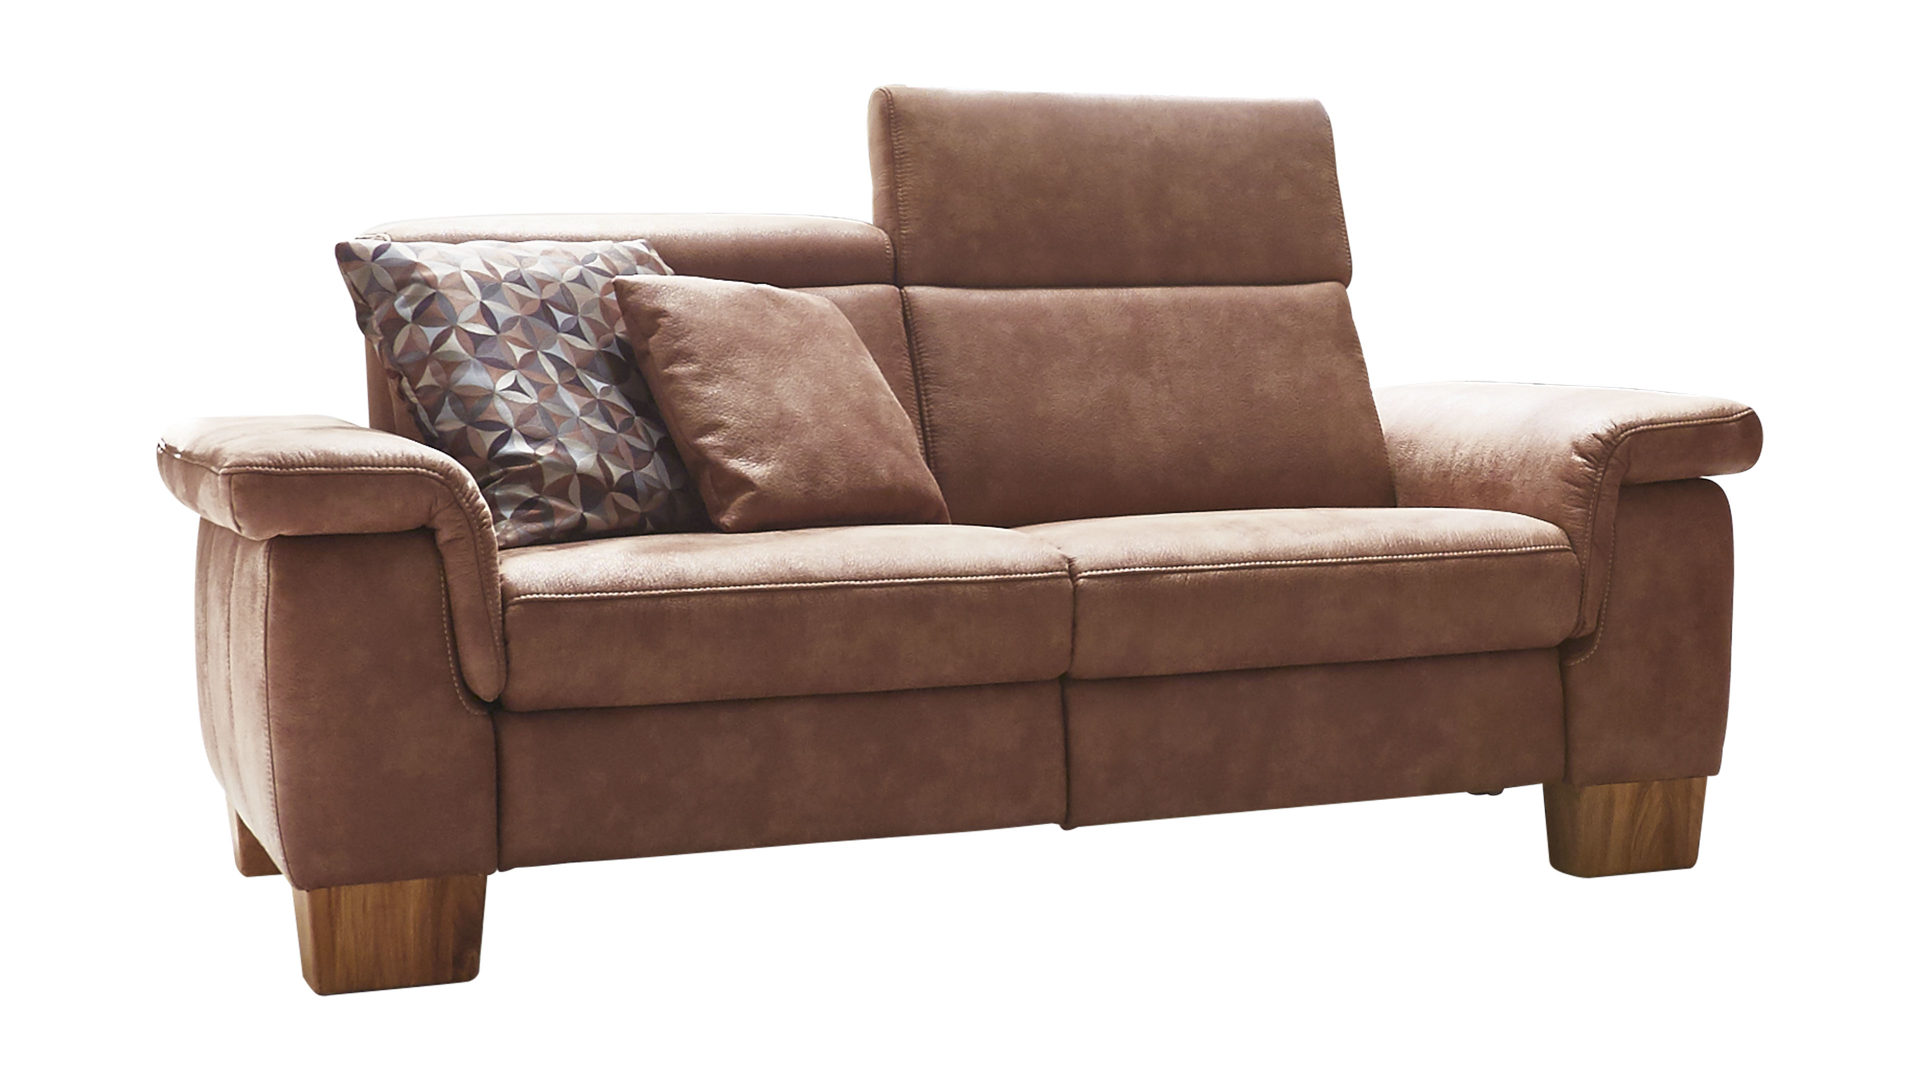 Zweisitzer Steinpol polsteria aus Stoff in Braun 2,5-Sitzer als Sofa bzw. Couch haselnussfarbene Mikrofaser Büffel & Eichenholzfüße – Länge ca. 187 cm